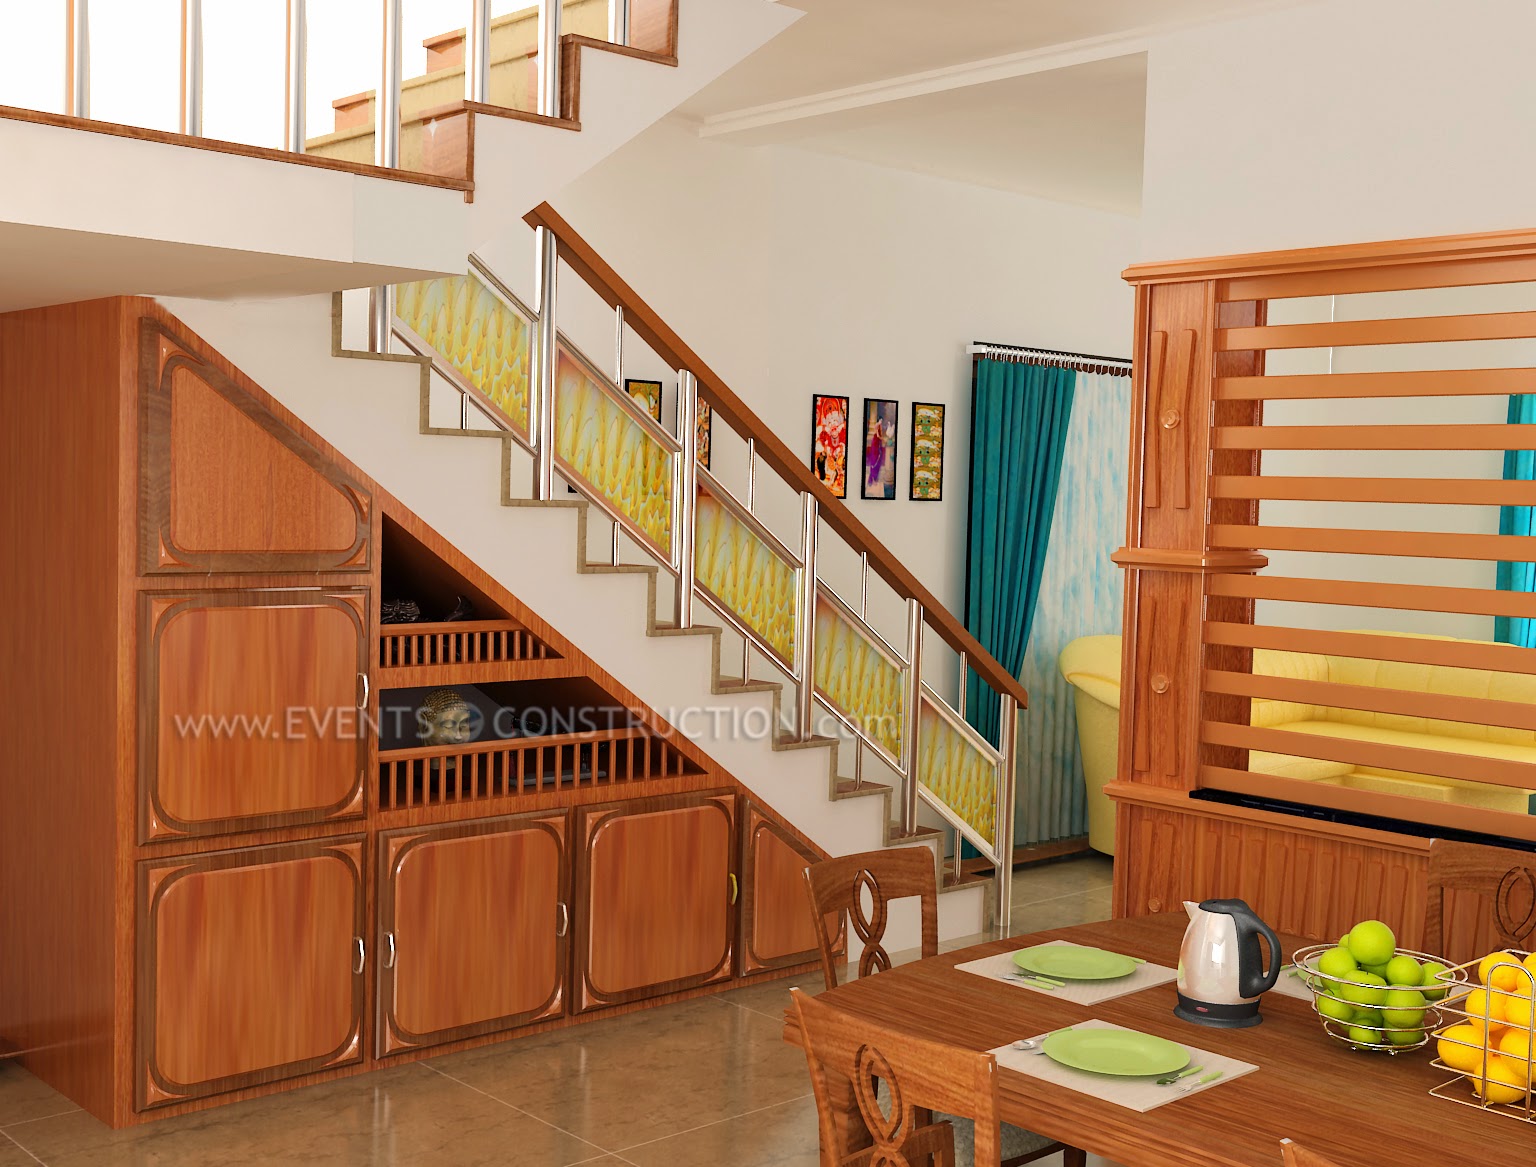 Staircase design for kerala homes | Garden Decoration Ideas Homemade